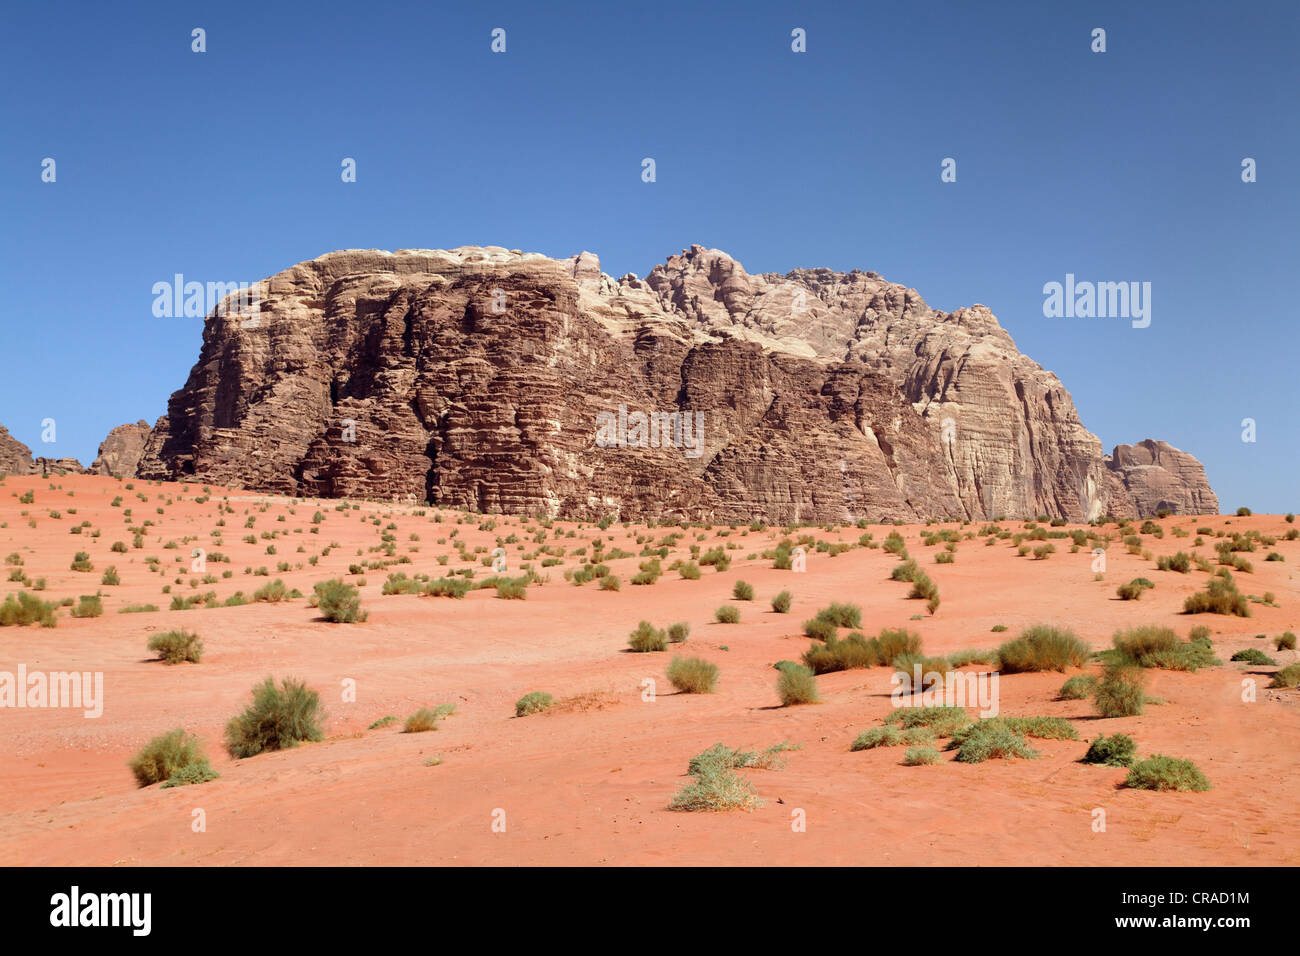 Berge, weite Ebenen und Wüsten Sträucher, Wadi Rum, Haschemitischen Königreich Jordanien, Naher Osten, Asien Stockfoto